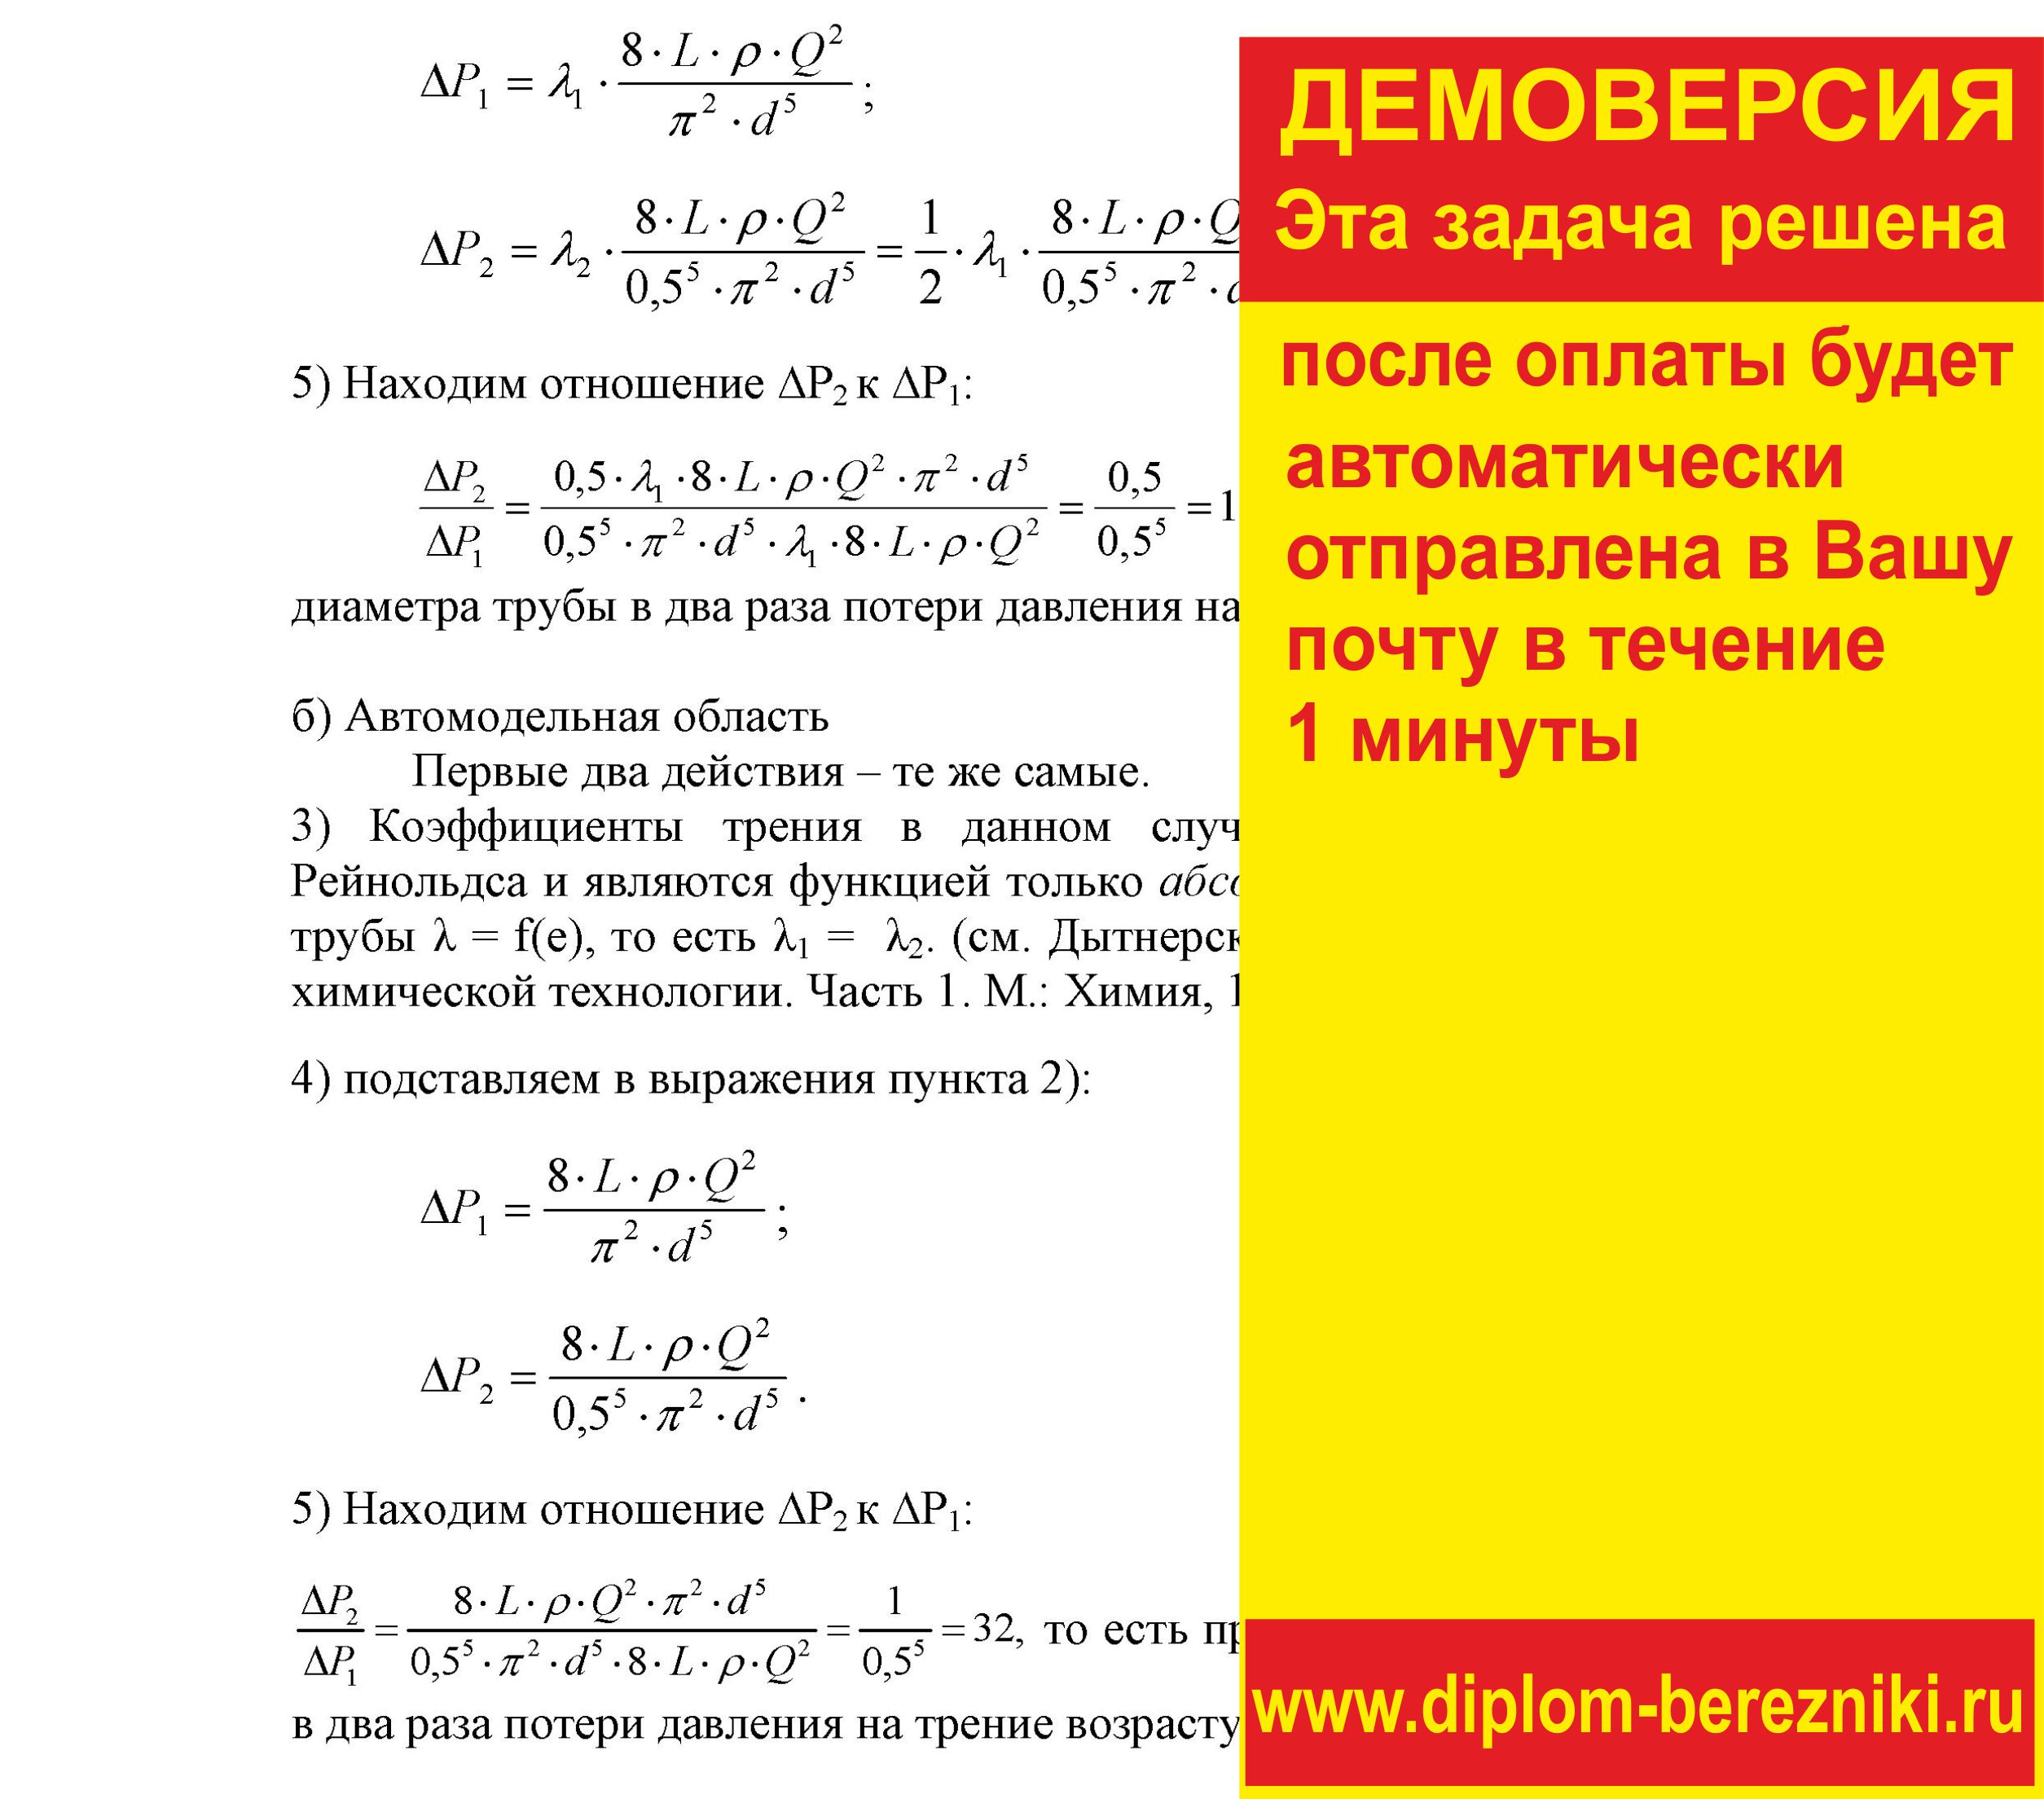 Решение задачи 1.32 по ПАХТ из задачника Павлова Романкова Носкова